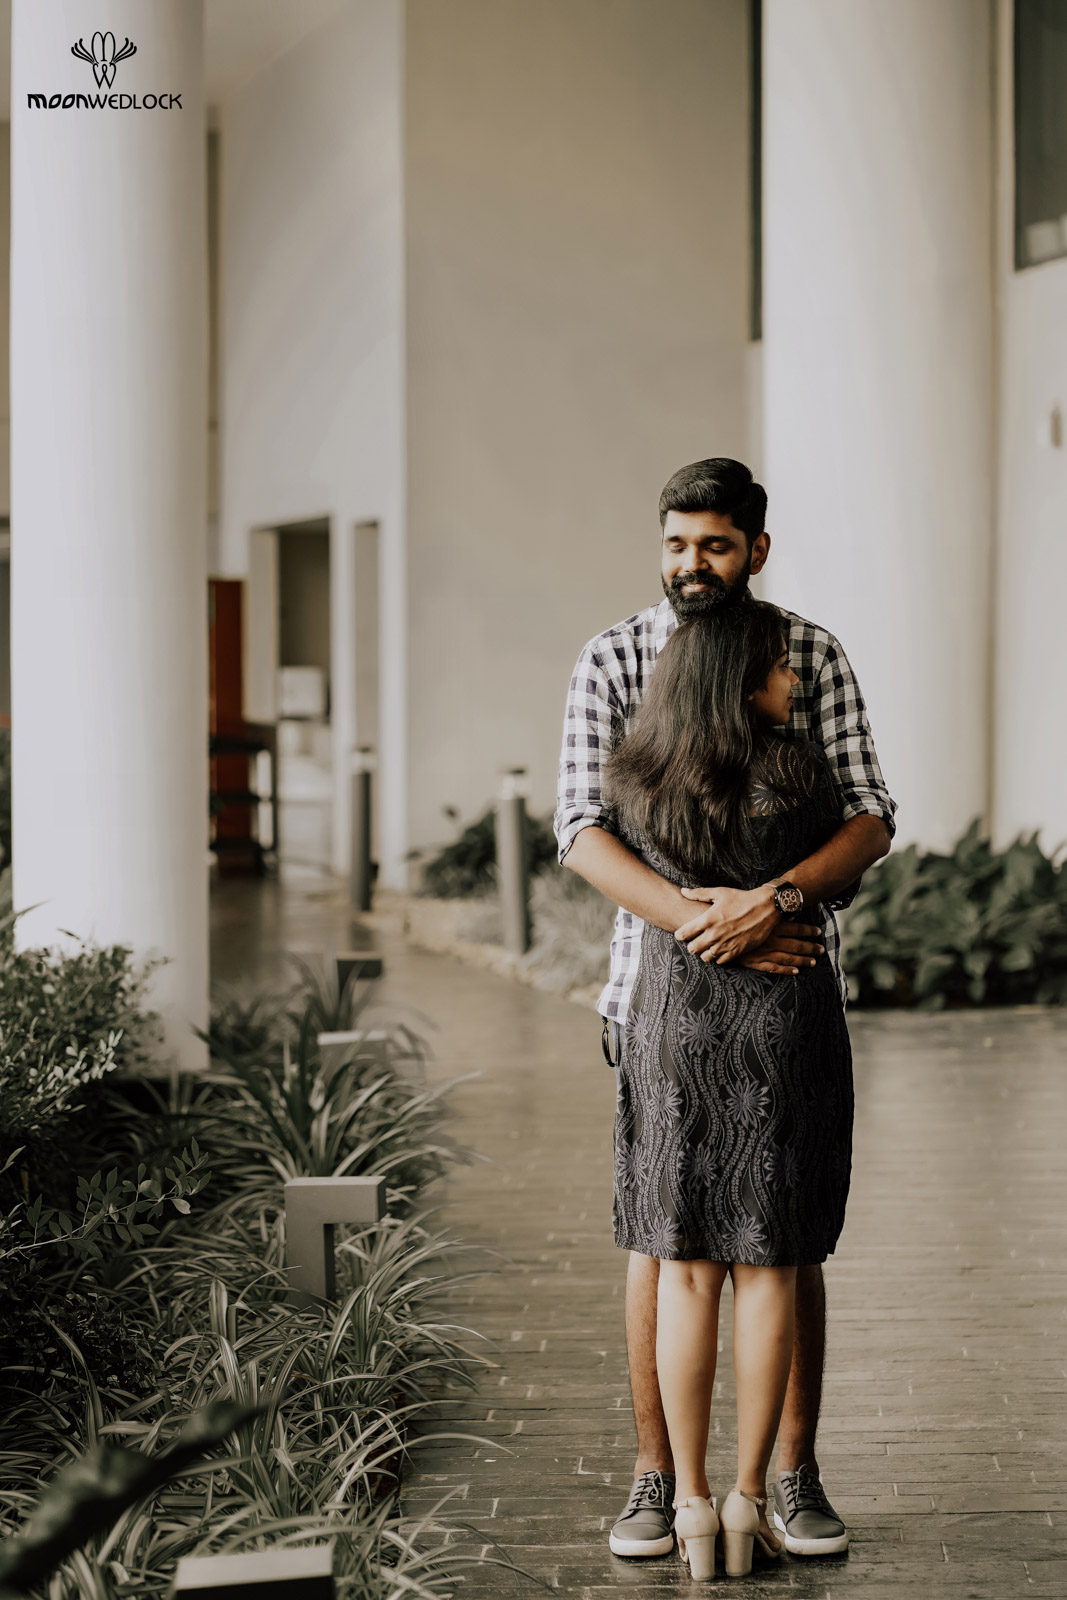 wedding-photographers-in-bangalore -moonwedlock (25)